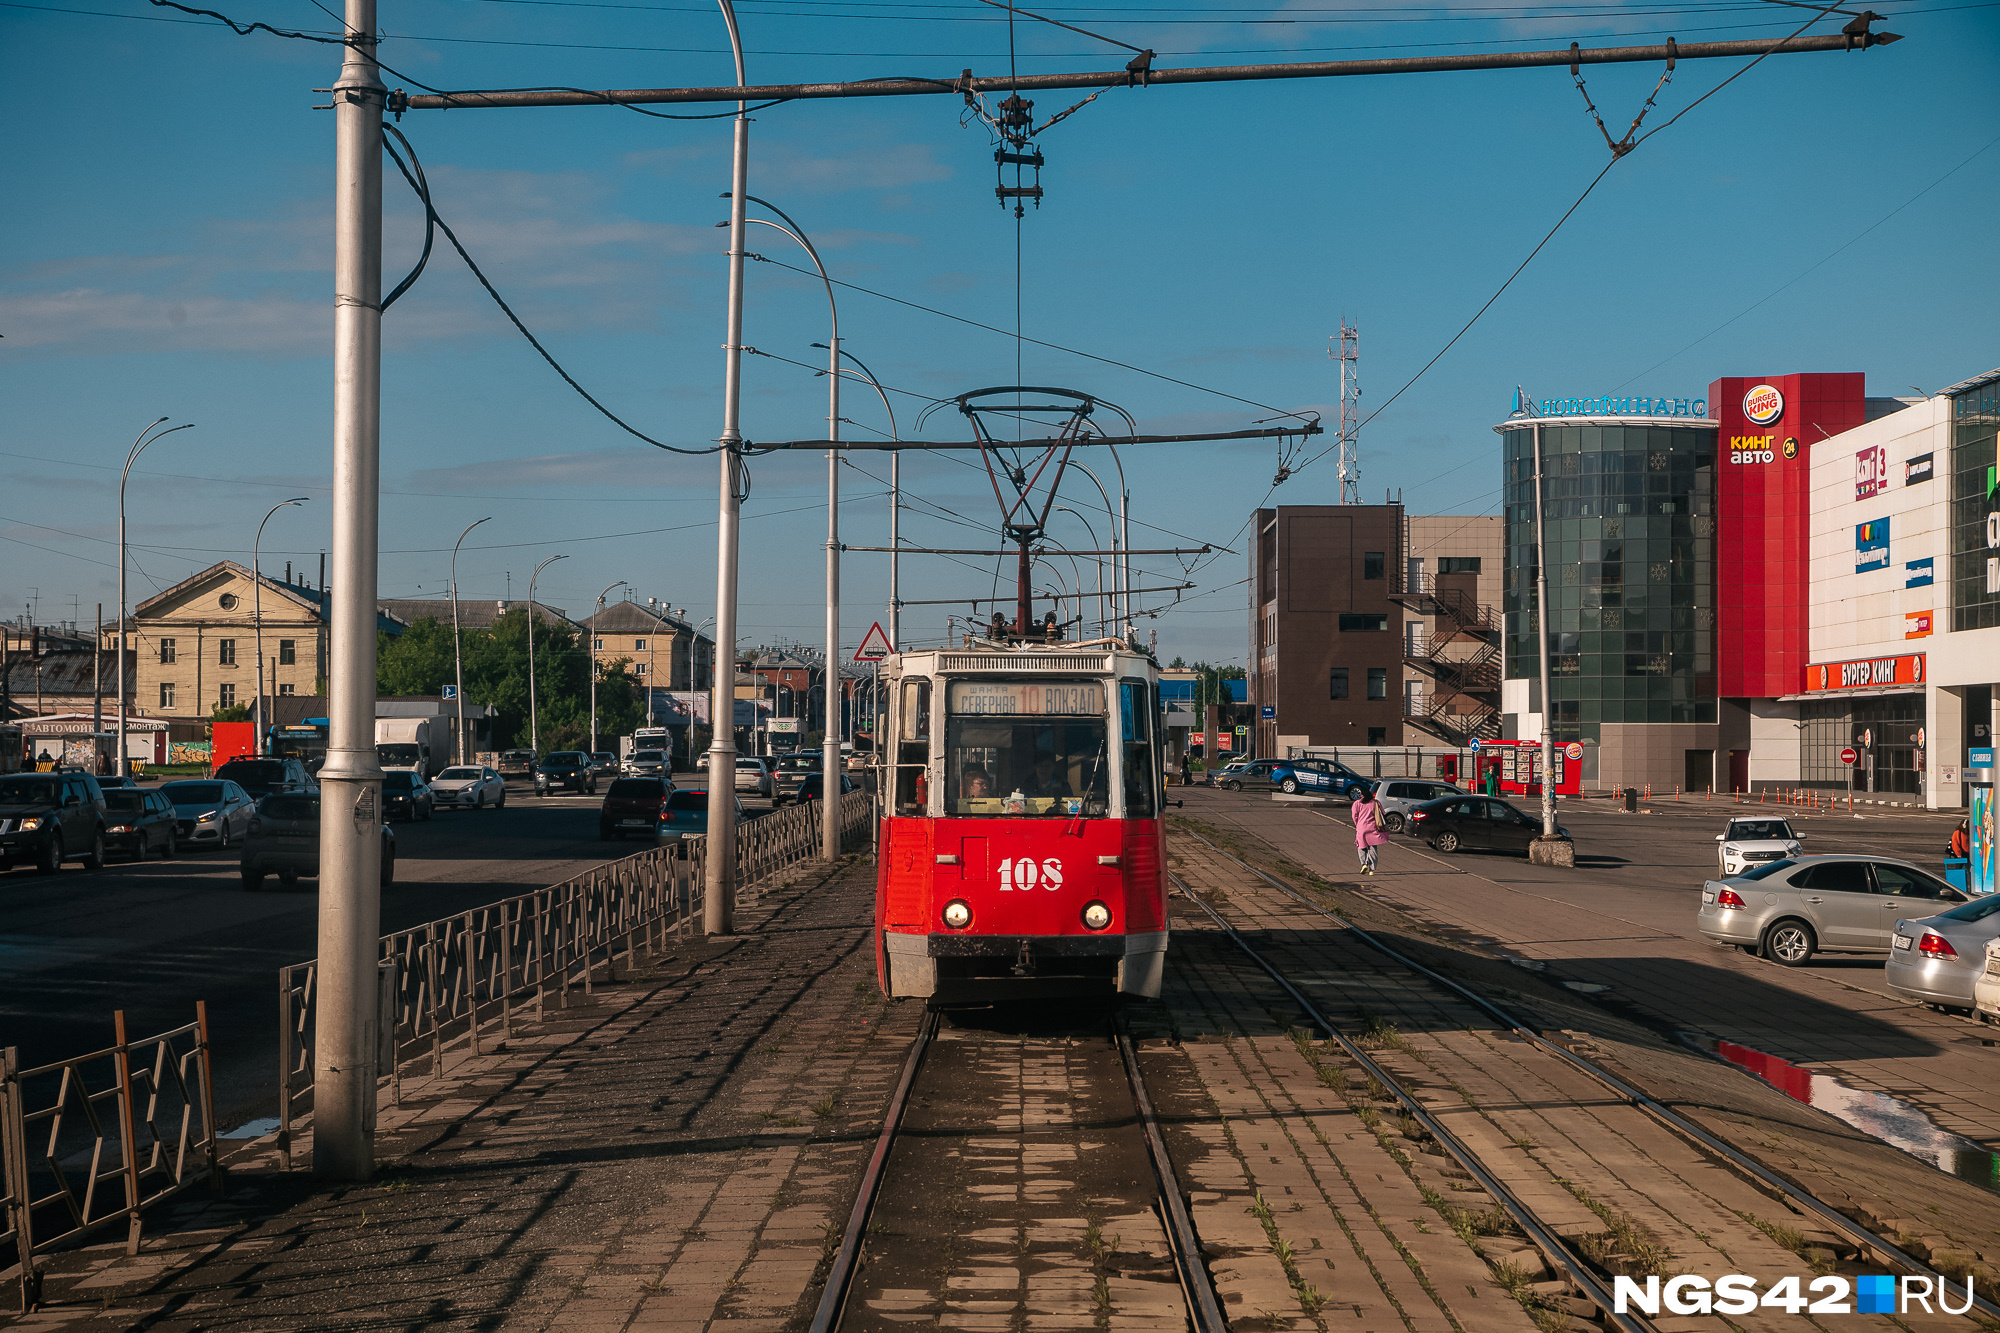 Власти Кемерова выбрали подрядчика для модернизации трамвая №10. Рассказываем, что о нем известно